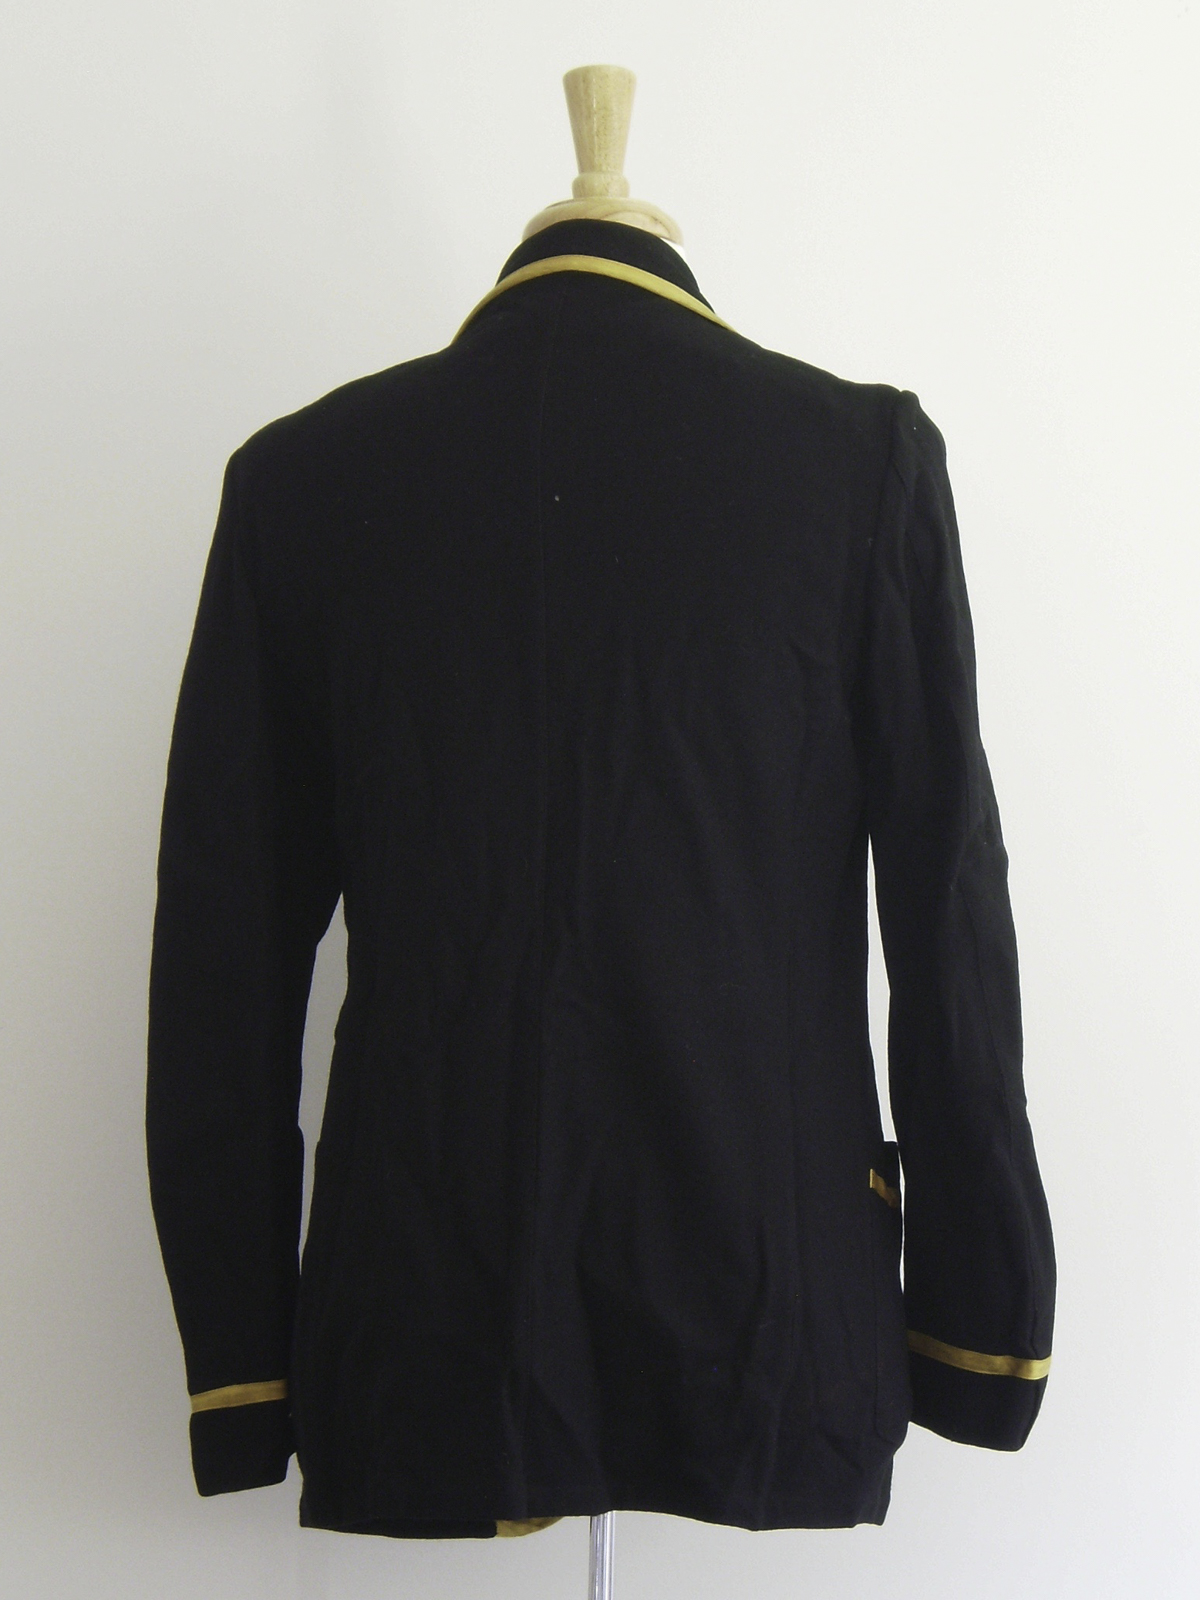 Reunion Jacket 1917 Variation 2 Rear